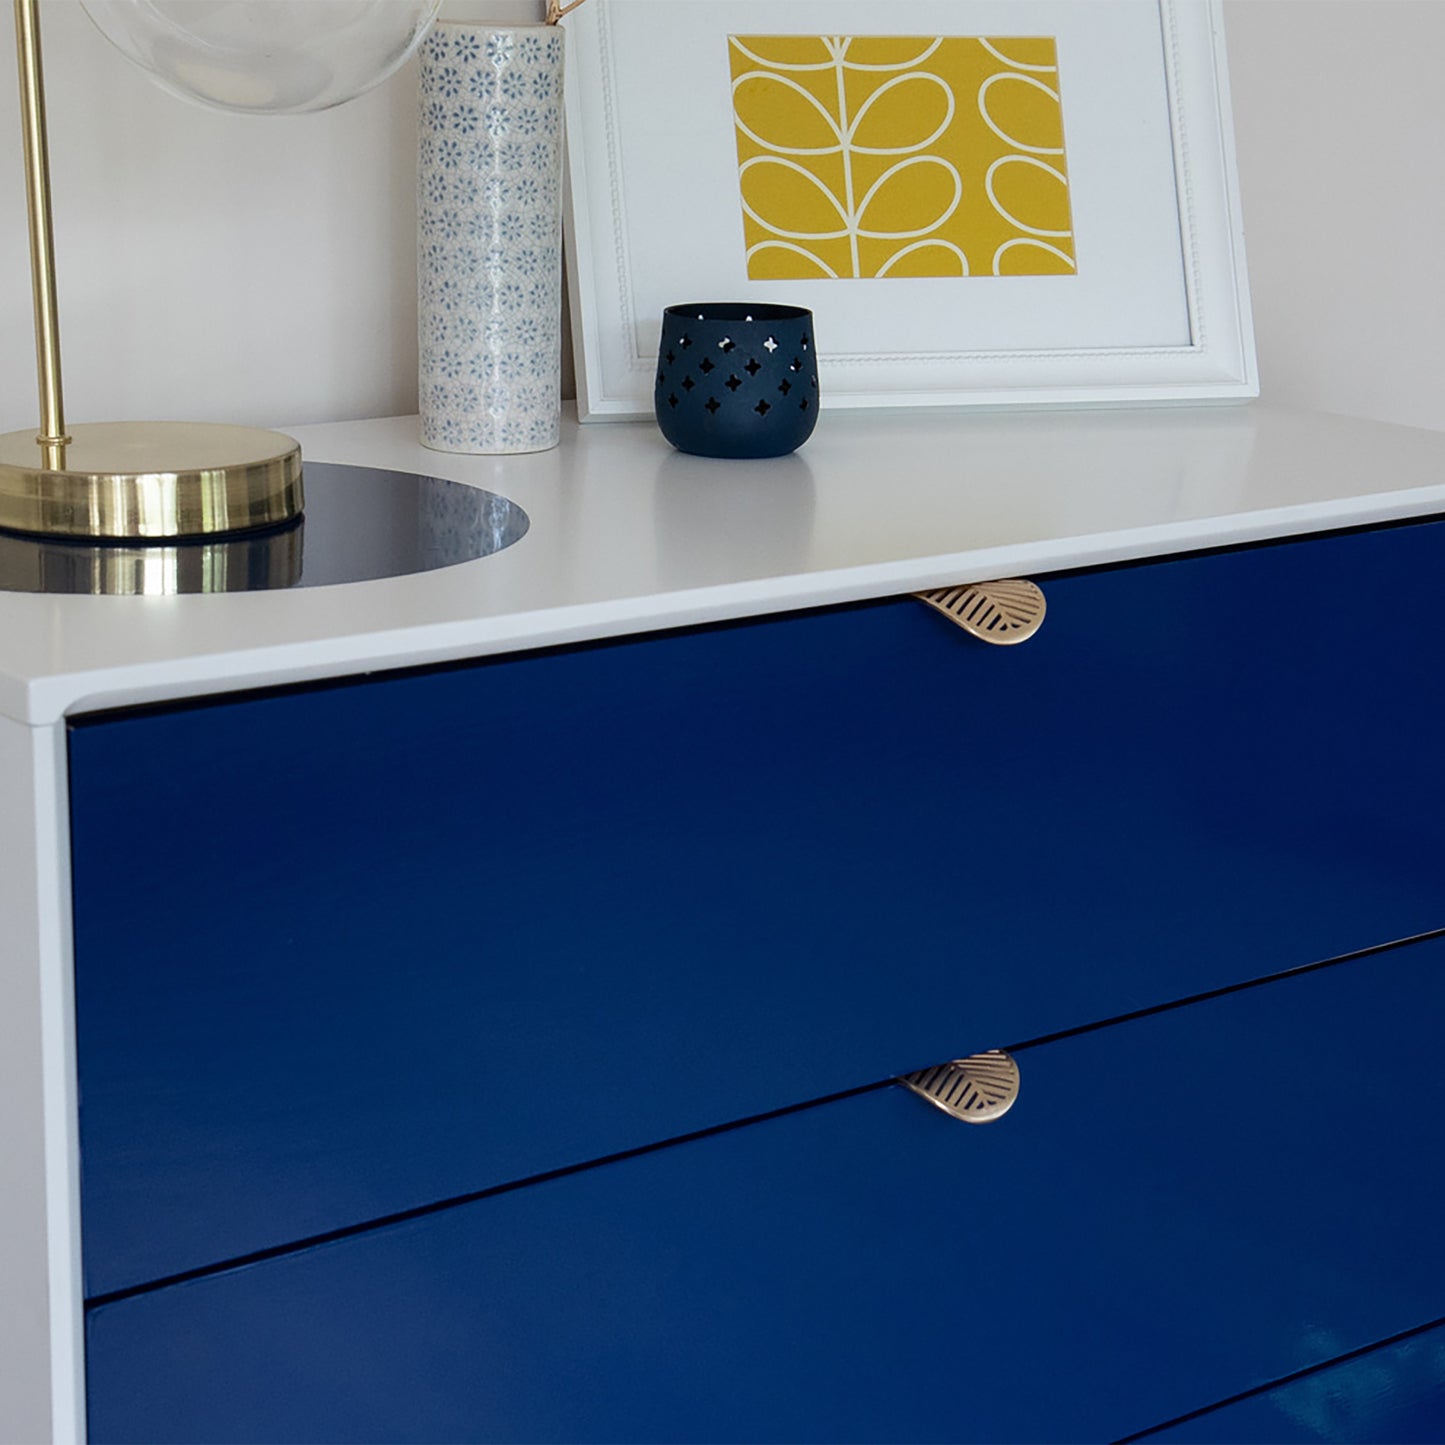 d-c-fix Gloss Navy Blue sticky Back Furniture & Kitchen Wrap